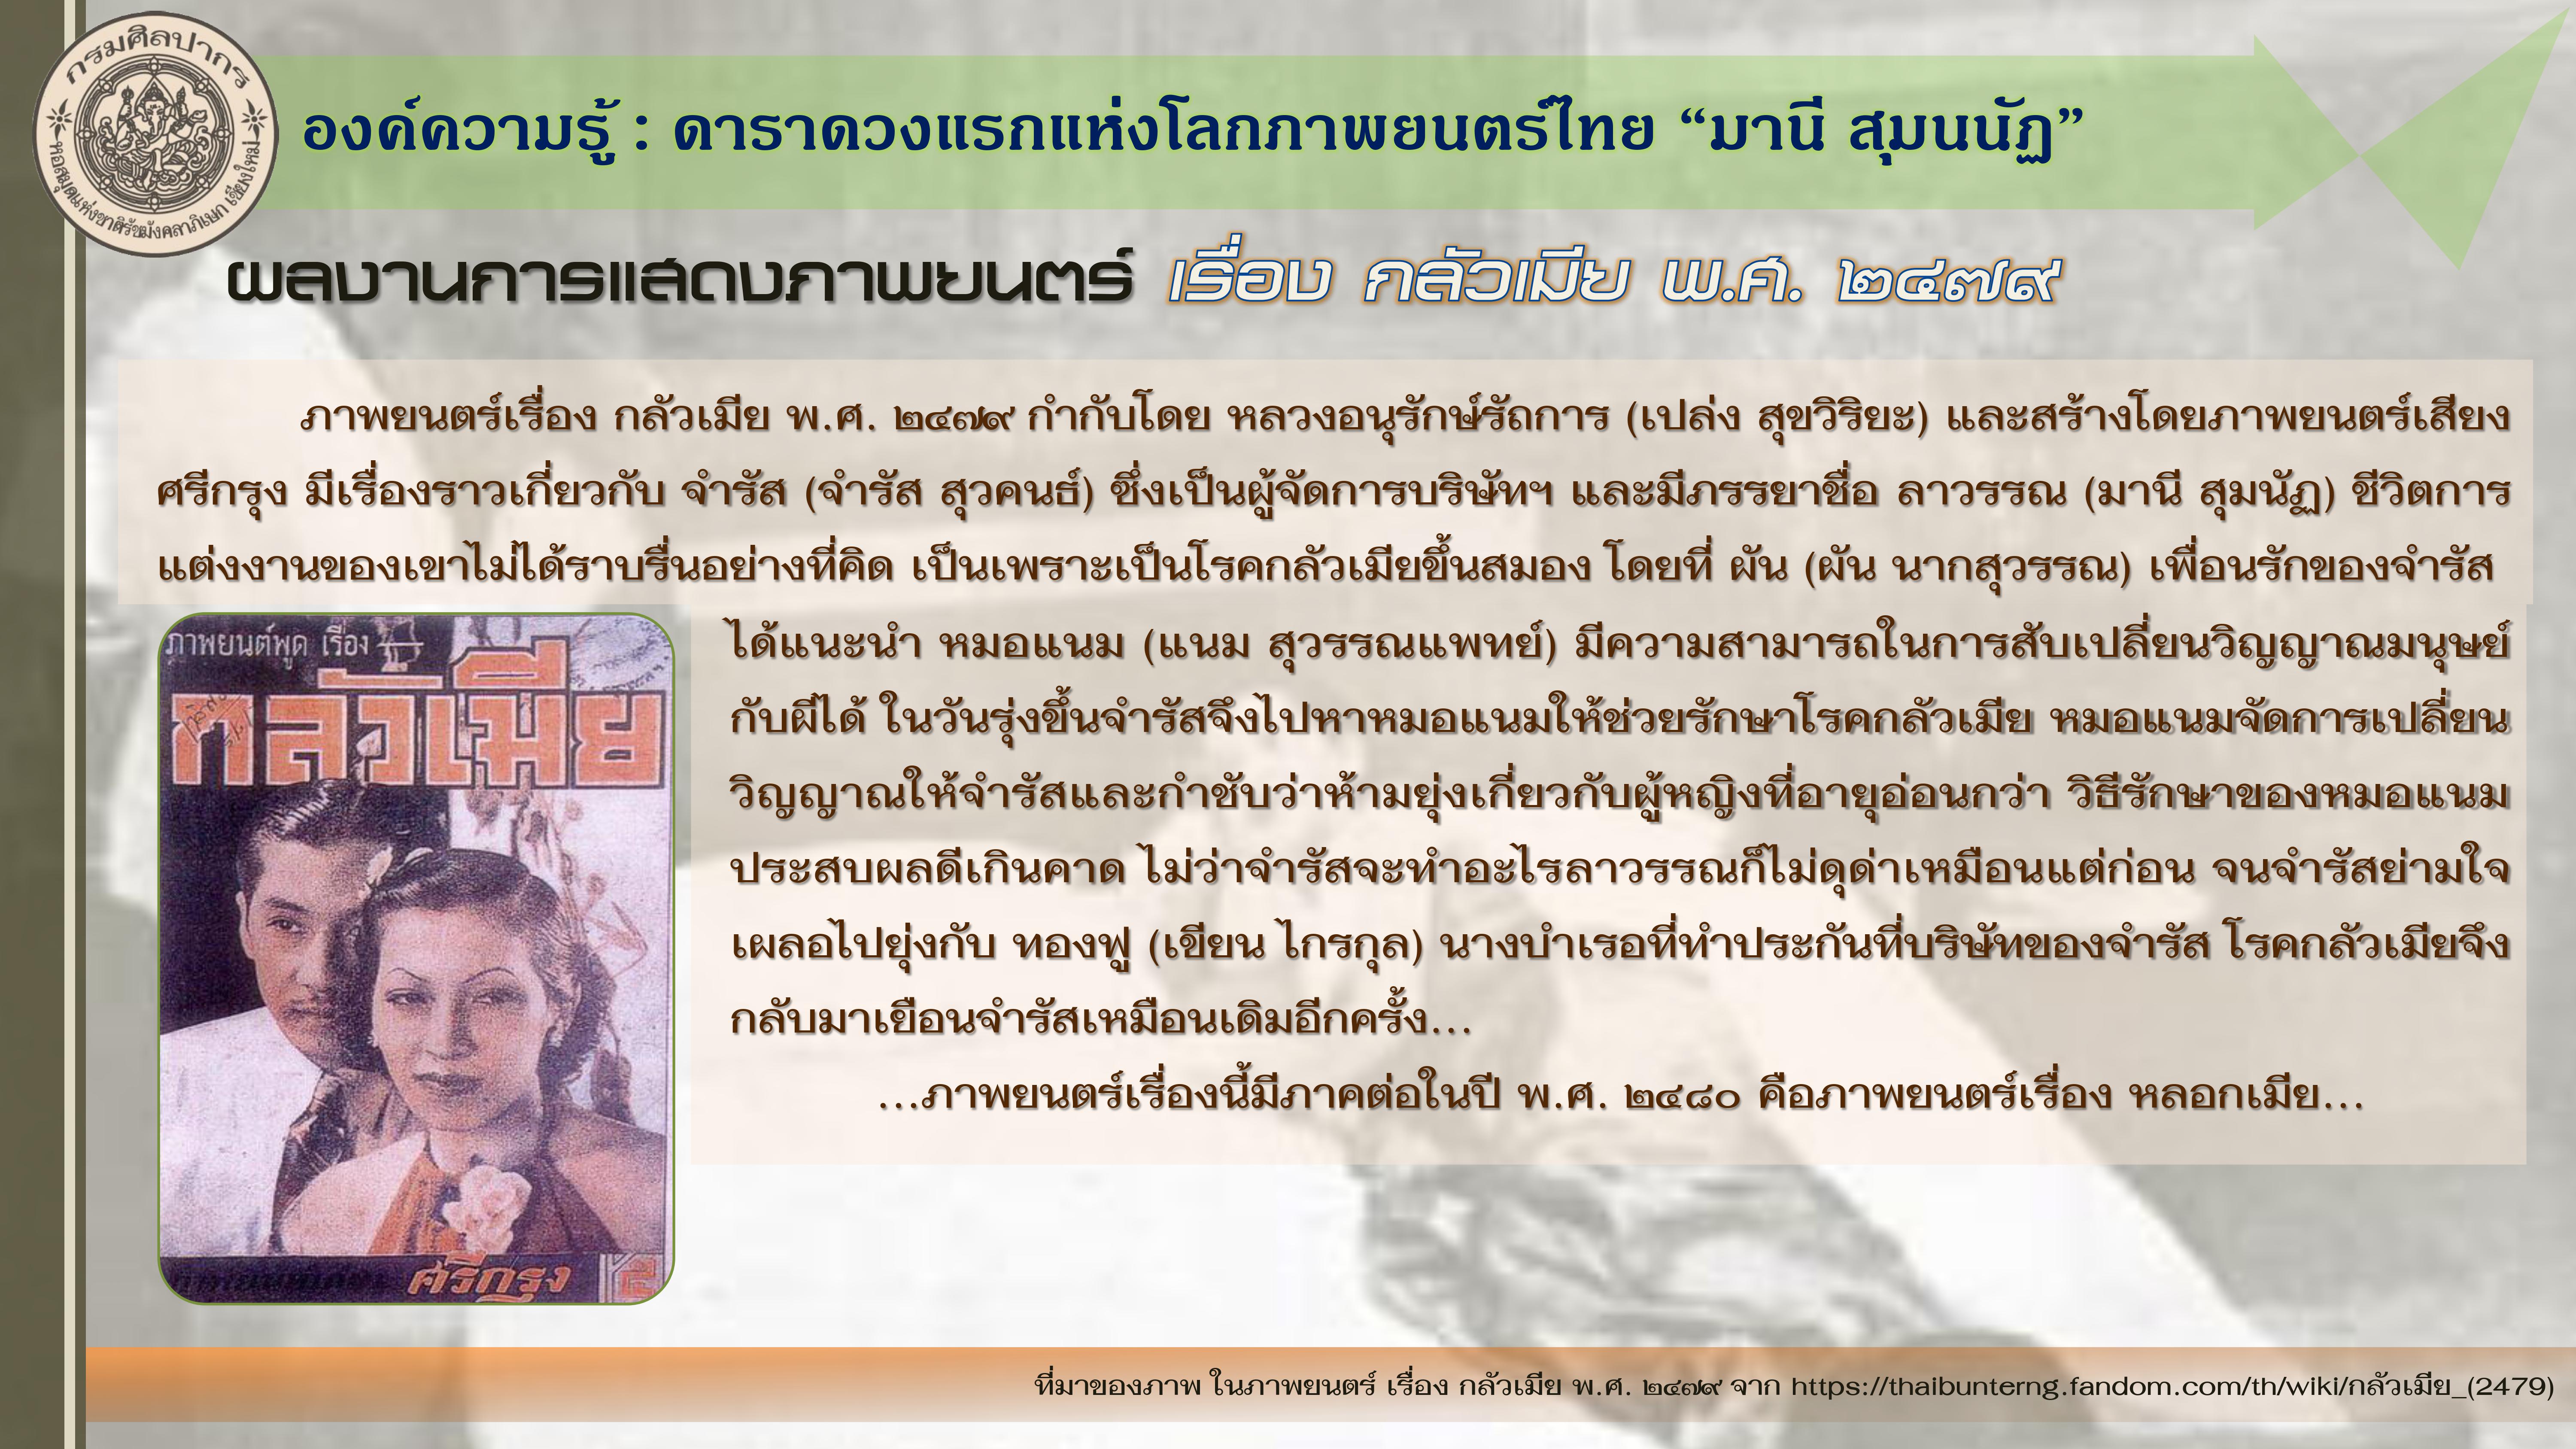 องค์ความรู้ : ดาราดวงแรกแห่งโลกภาพยนตร์ไทย “มานี สุมนนัฏ”